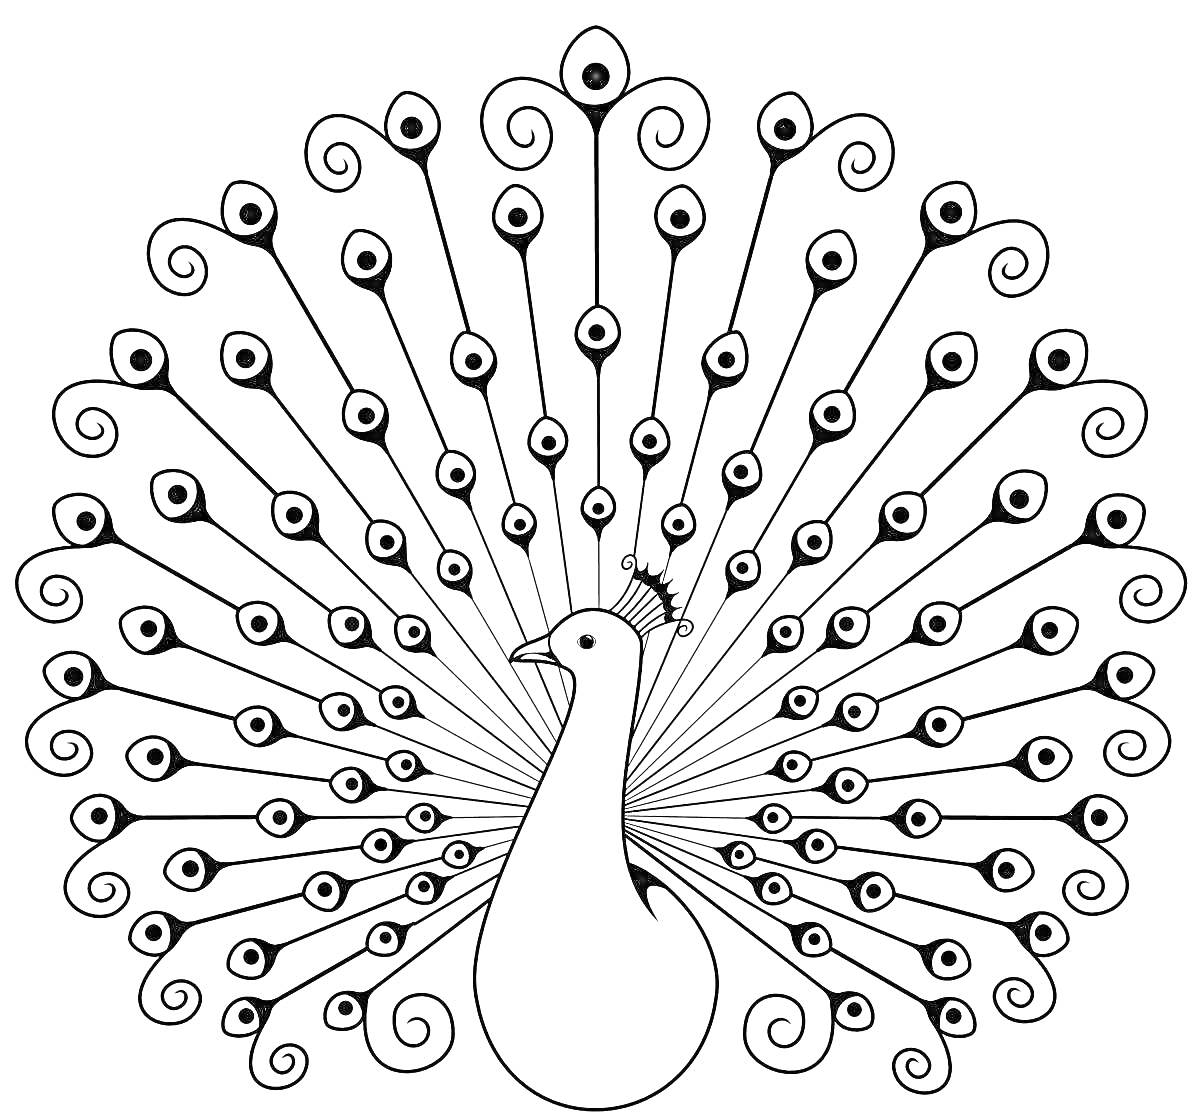 Раскраска Павлин с распущенным хвостом, украшенный деталями на перьях